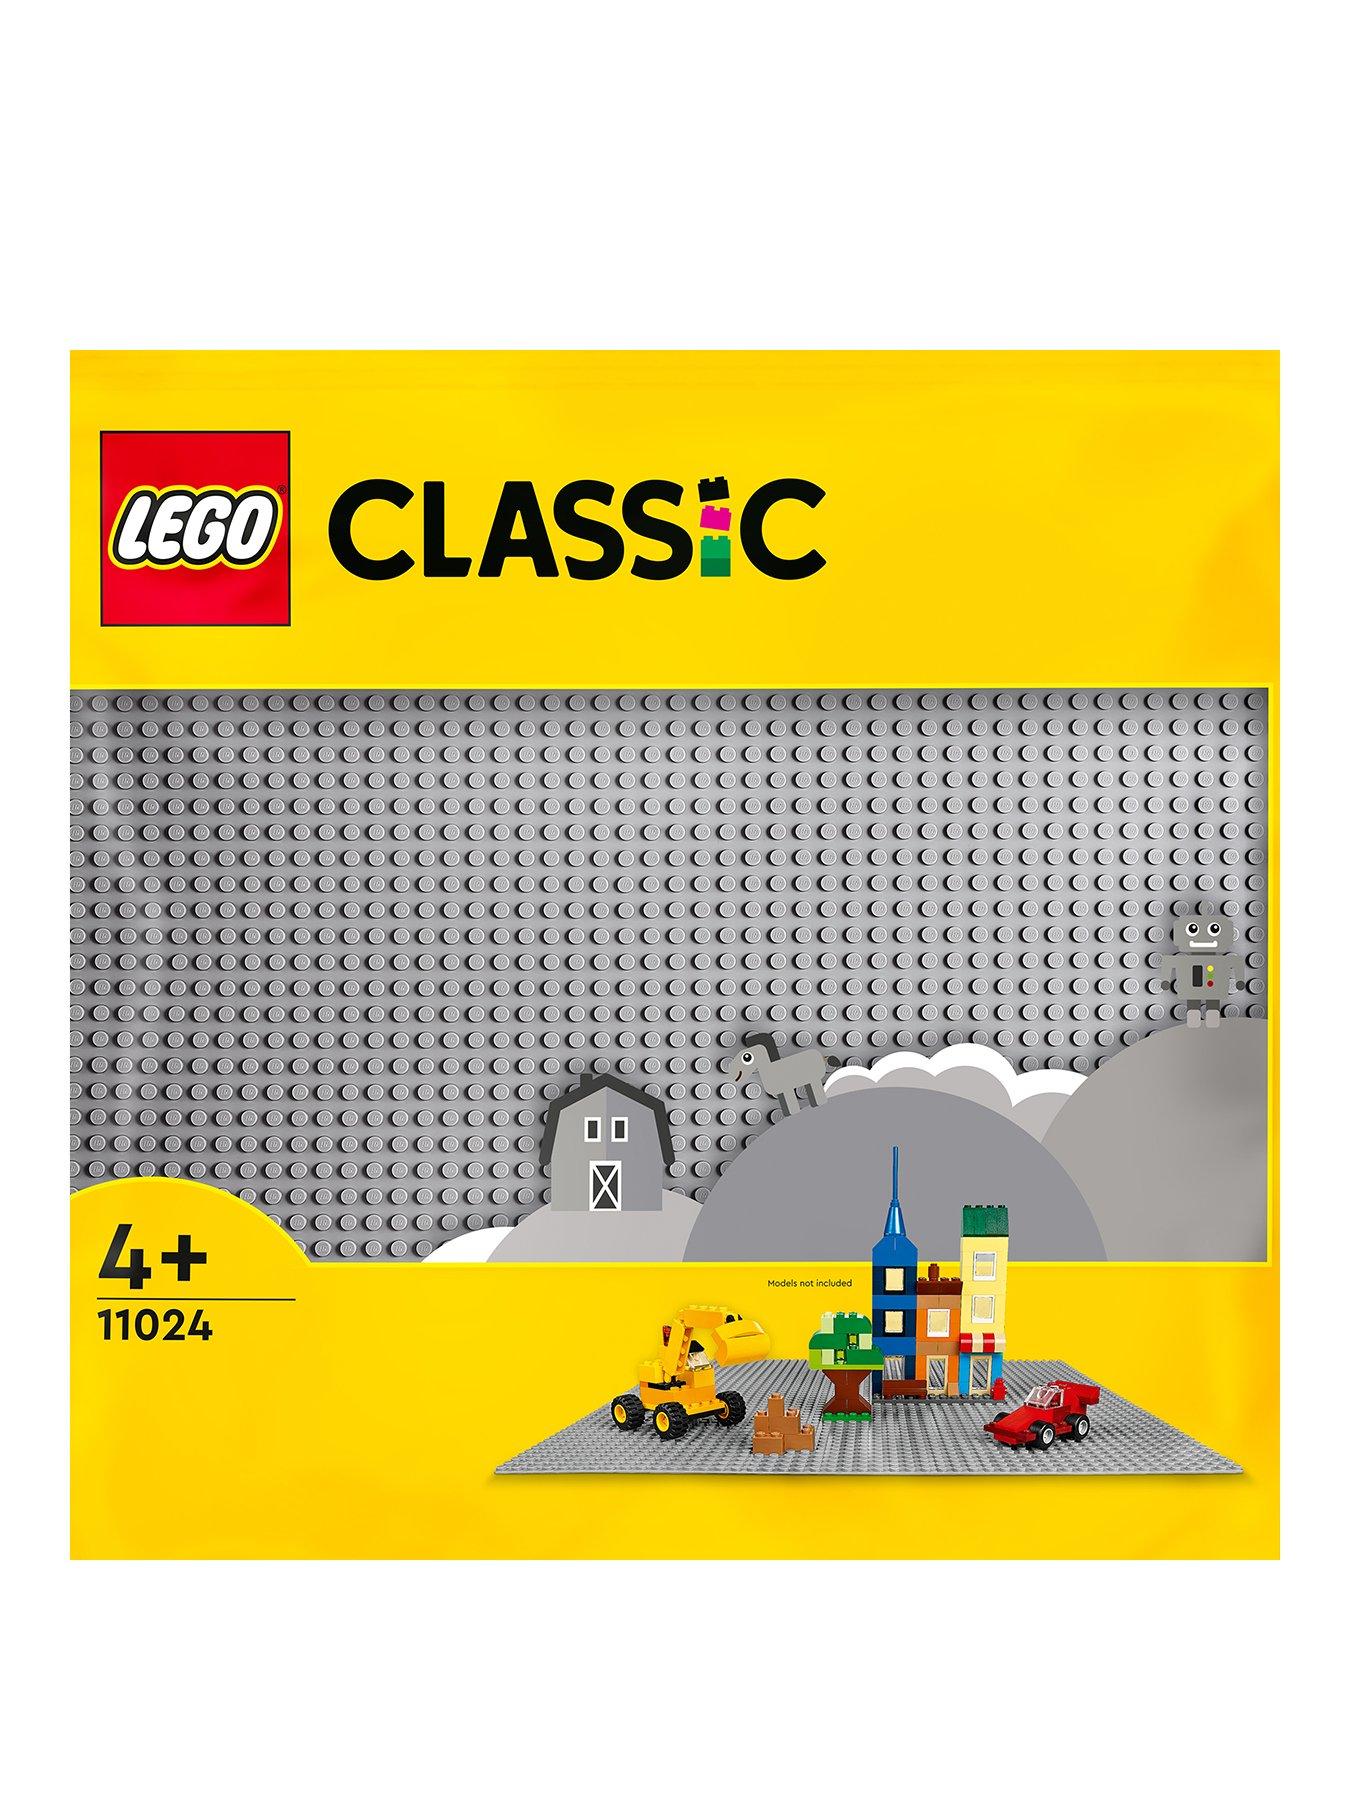 LEGO Gray Baseplate 11024 – £12.99